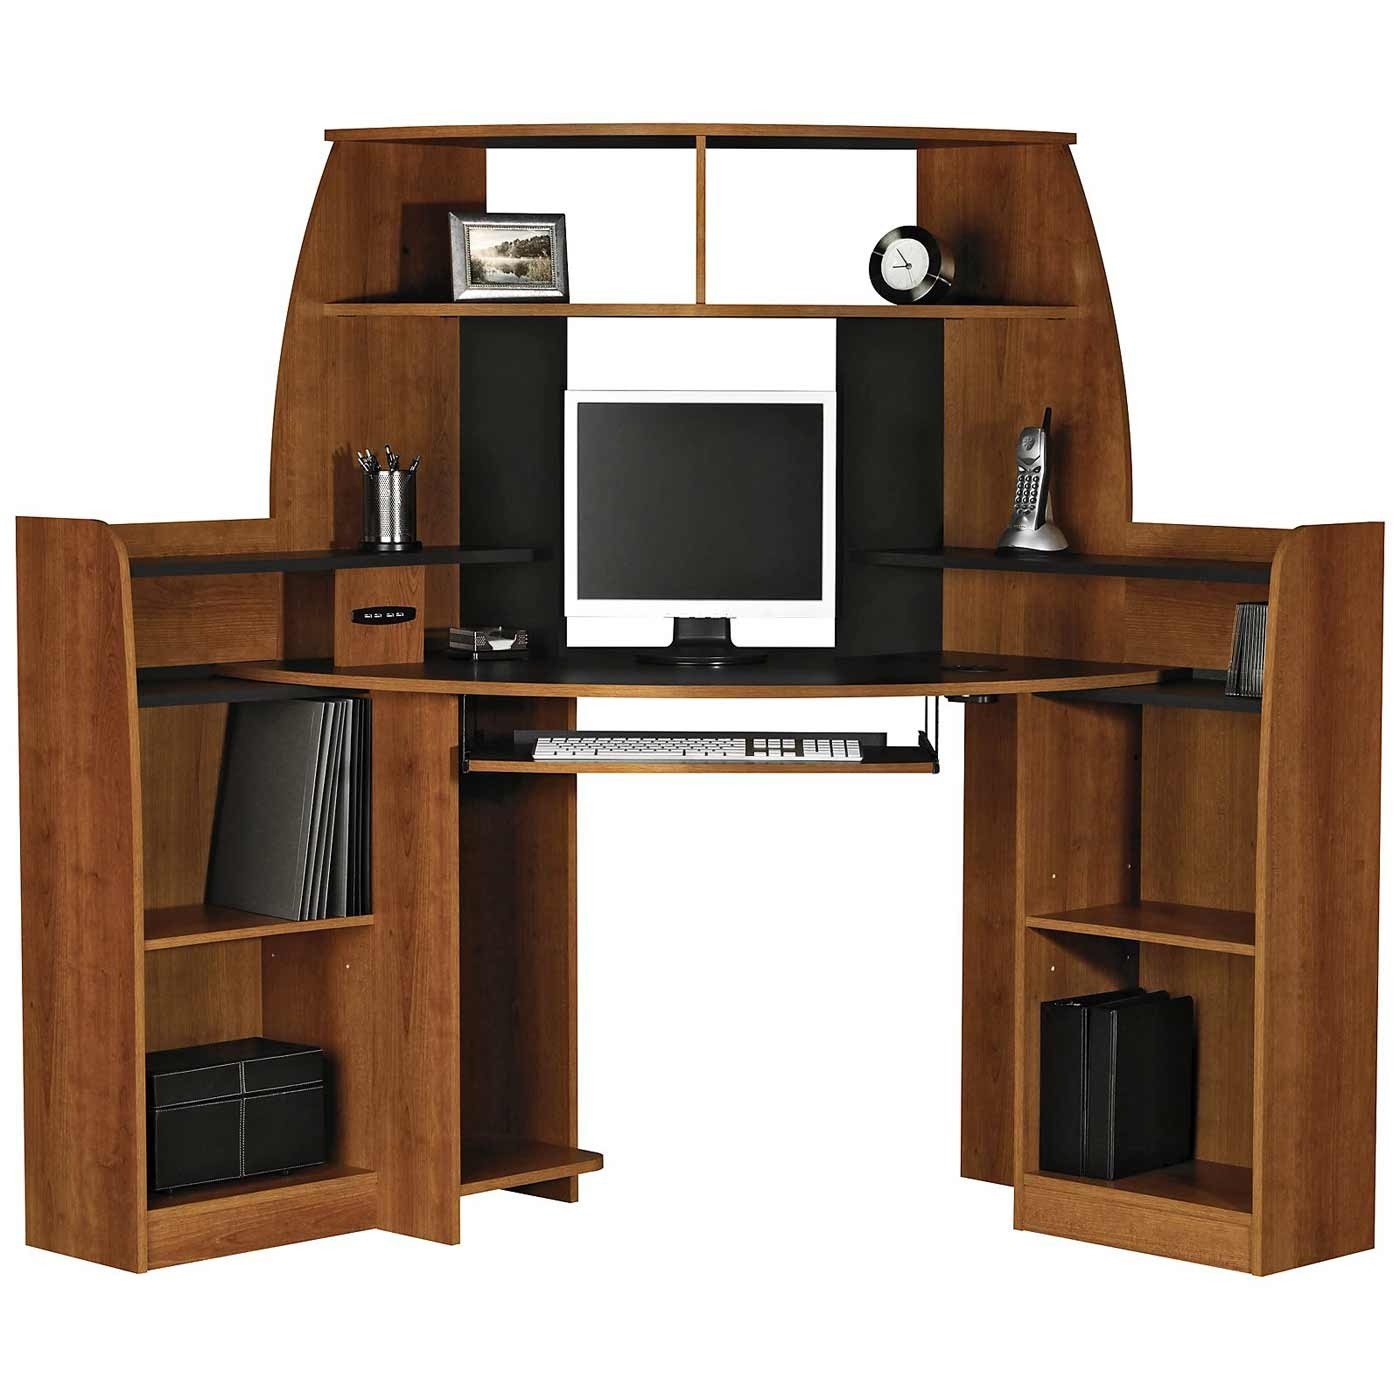 Desk with shelves on side